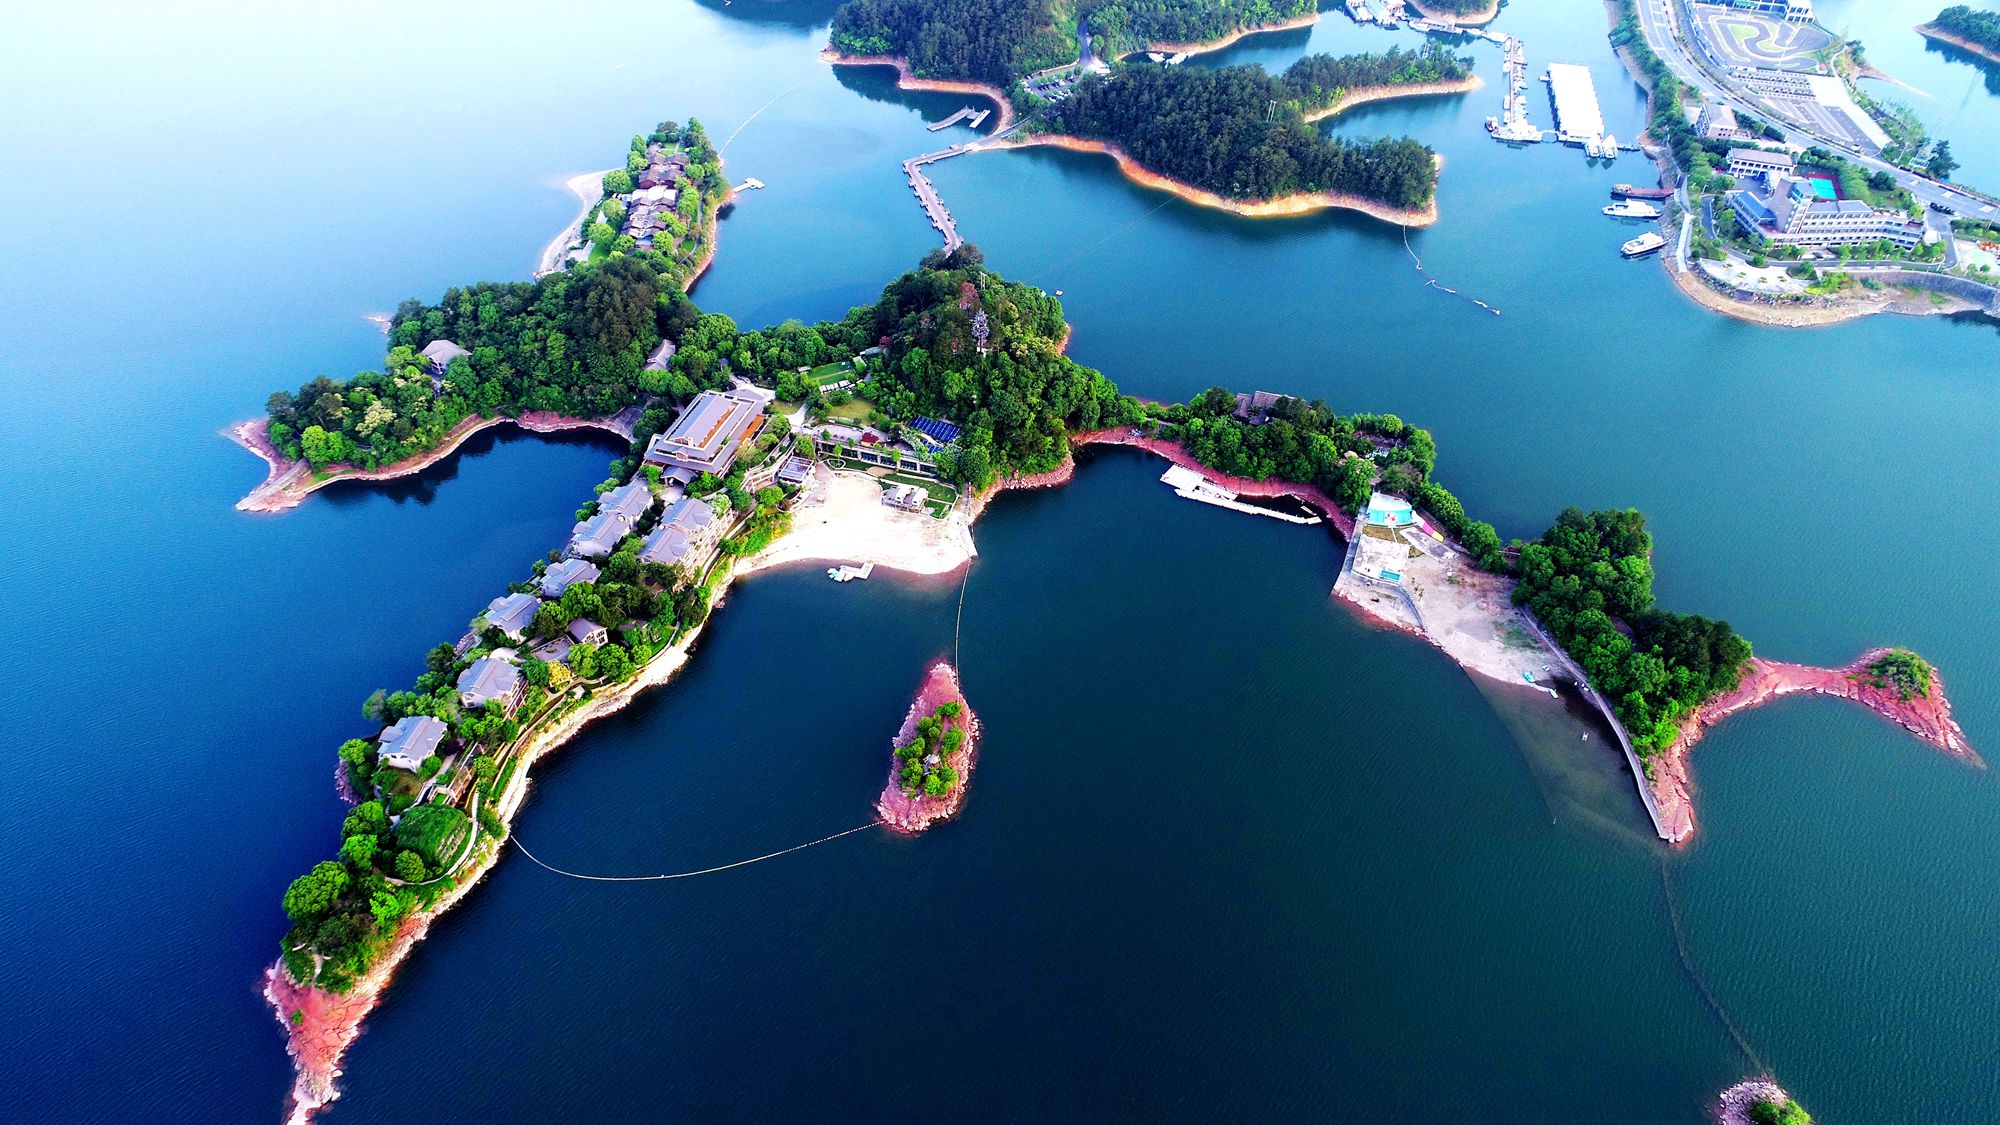 千岛湖天下为公全景图片